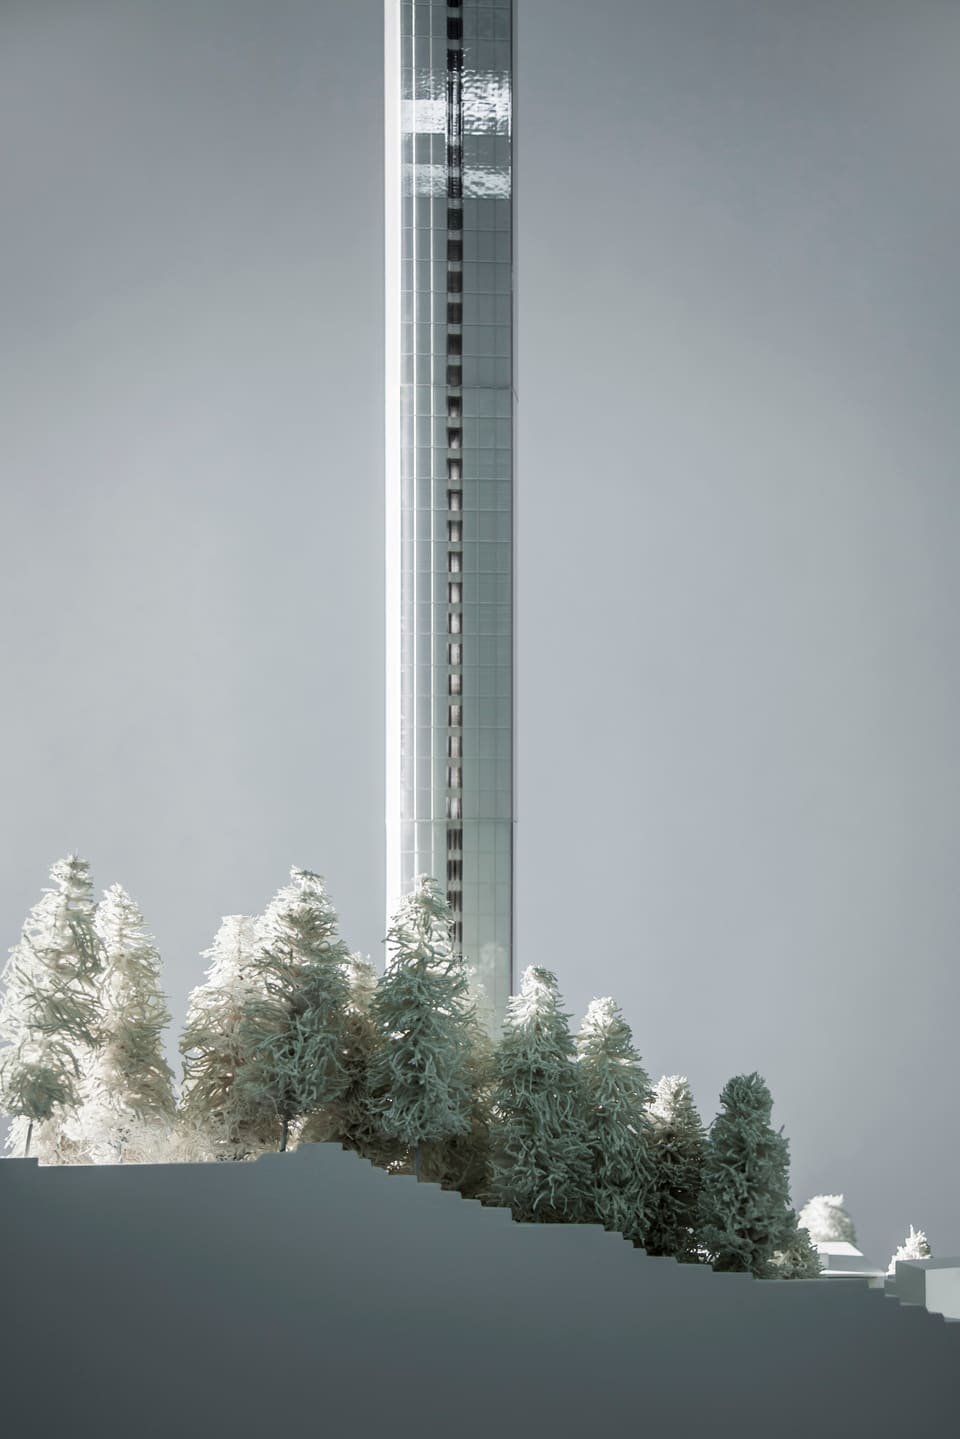 Modell des Turms.